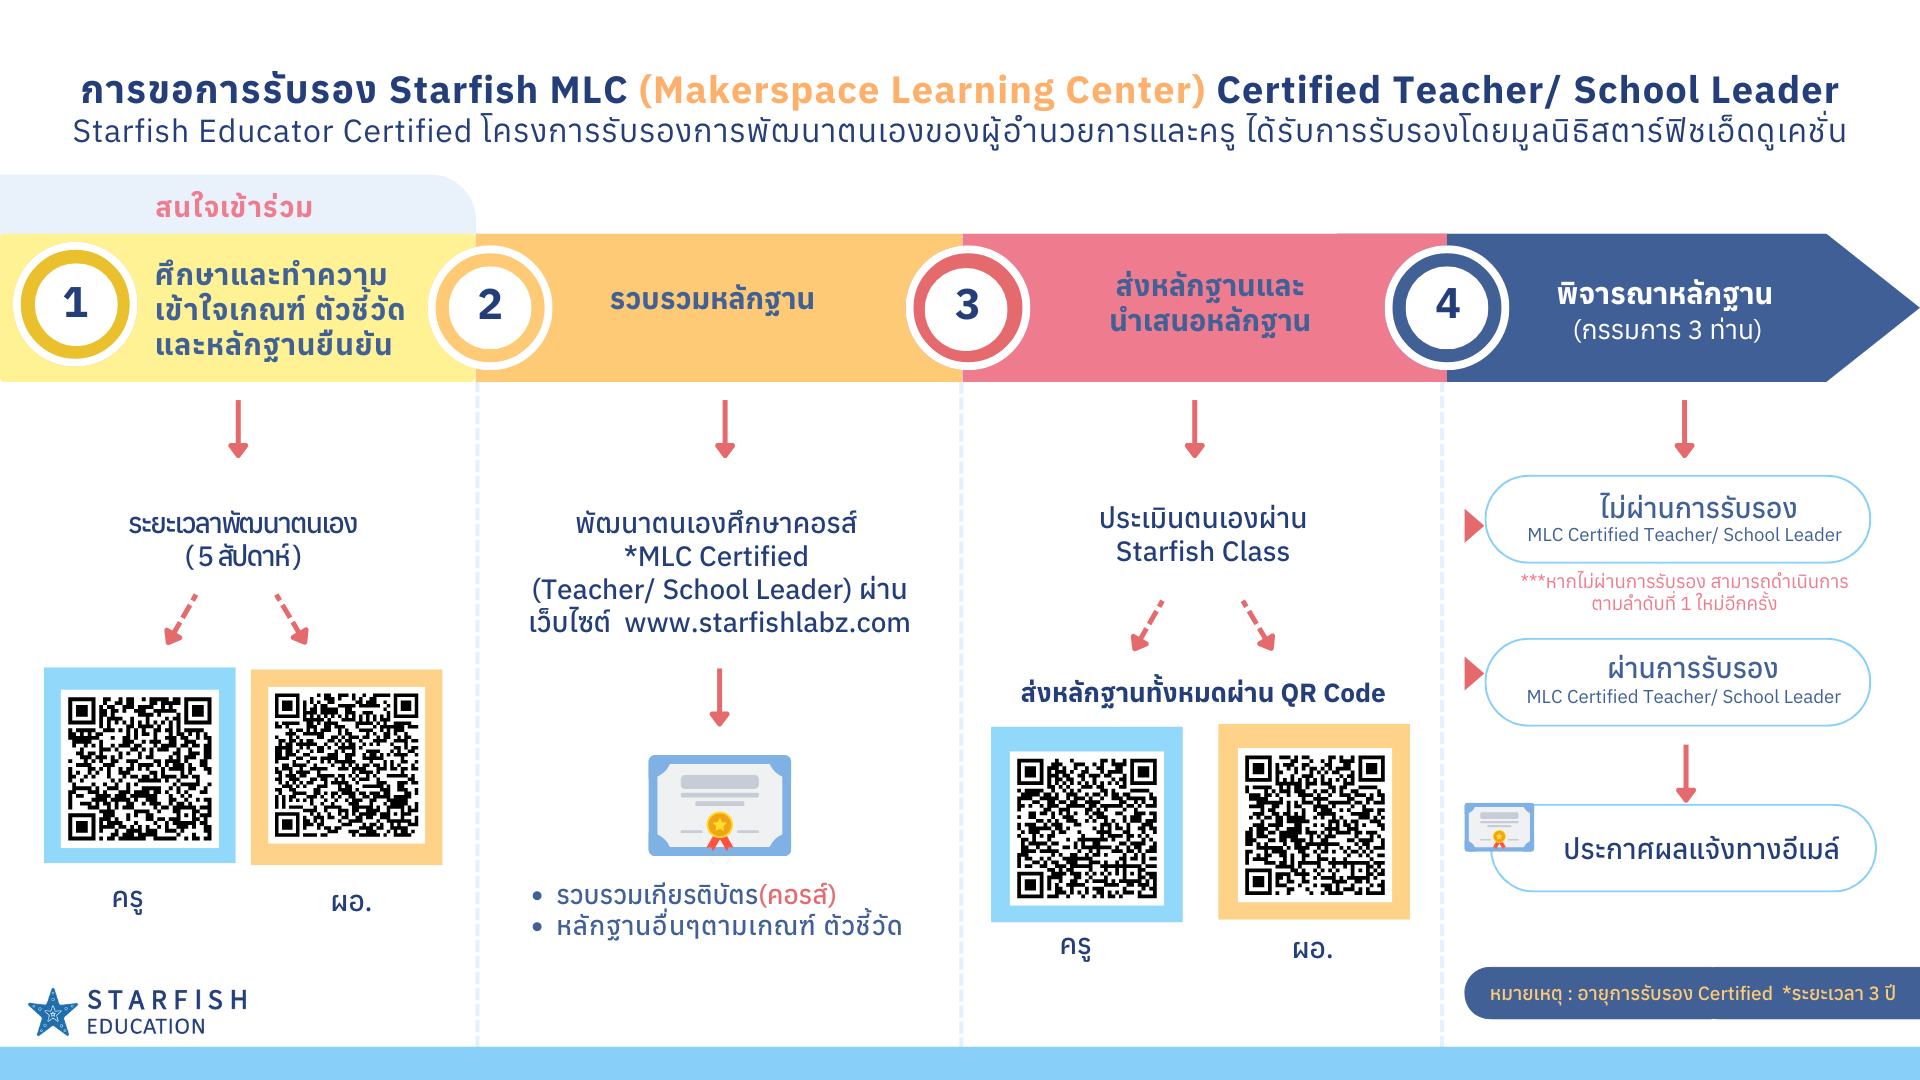 การขอการรับรอง Starfish MLC (Makerspace Learning Center) Certified Teacher/ School Leader Starfish Educator Certified โครงการรับรองการพัฒนาตนเองของผู้อำนวยการและครู ได้รับการรับรองโดยมูลนิธิสตาร์ฟิชเอ็ดดูเคชั่น